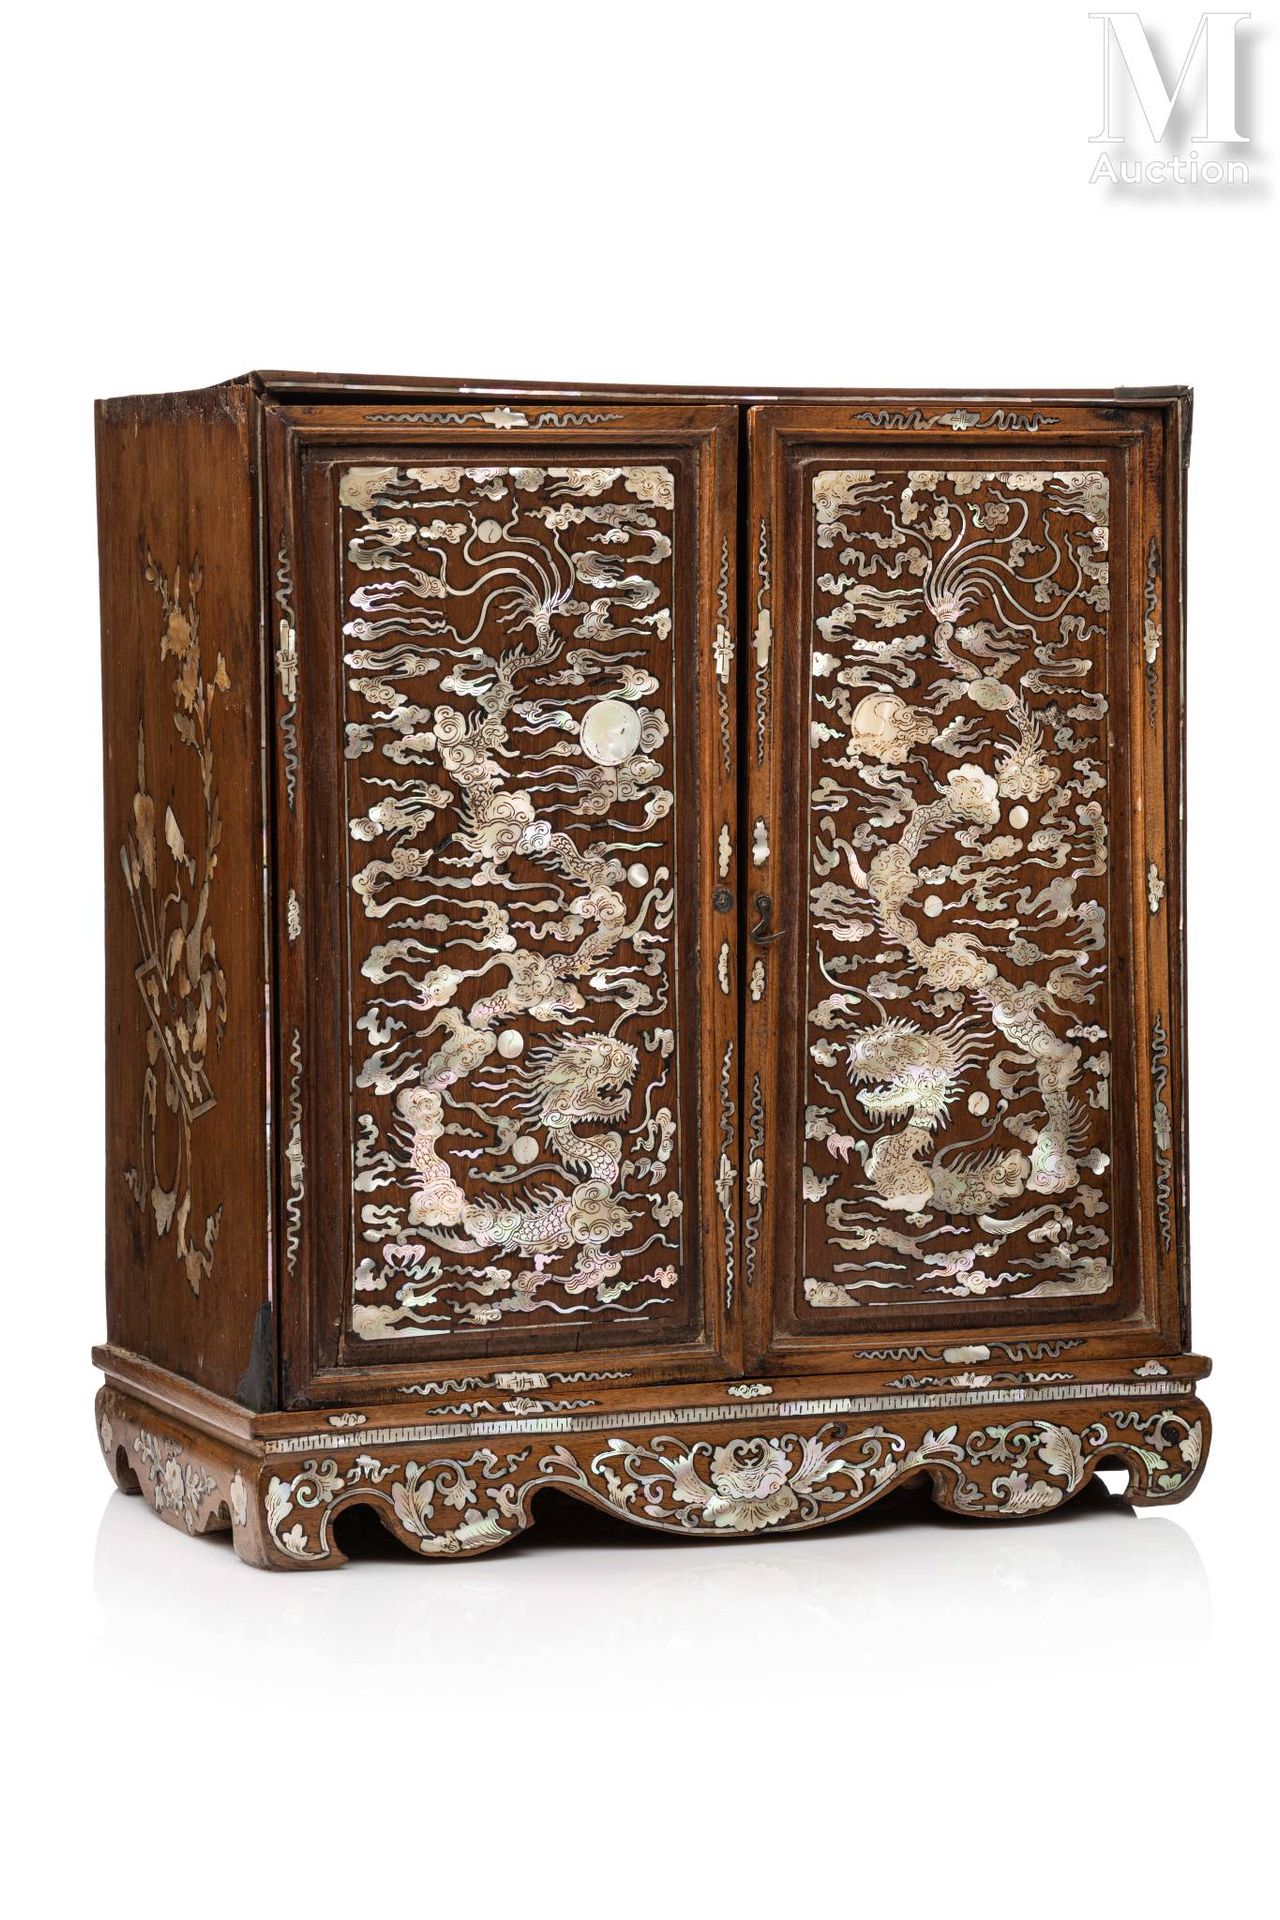 Ⓟ VIETNAM, XIXe siècle Elégant cabinet de table
En bois exotique et de forme qua&hellip;